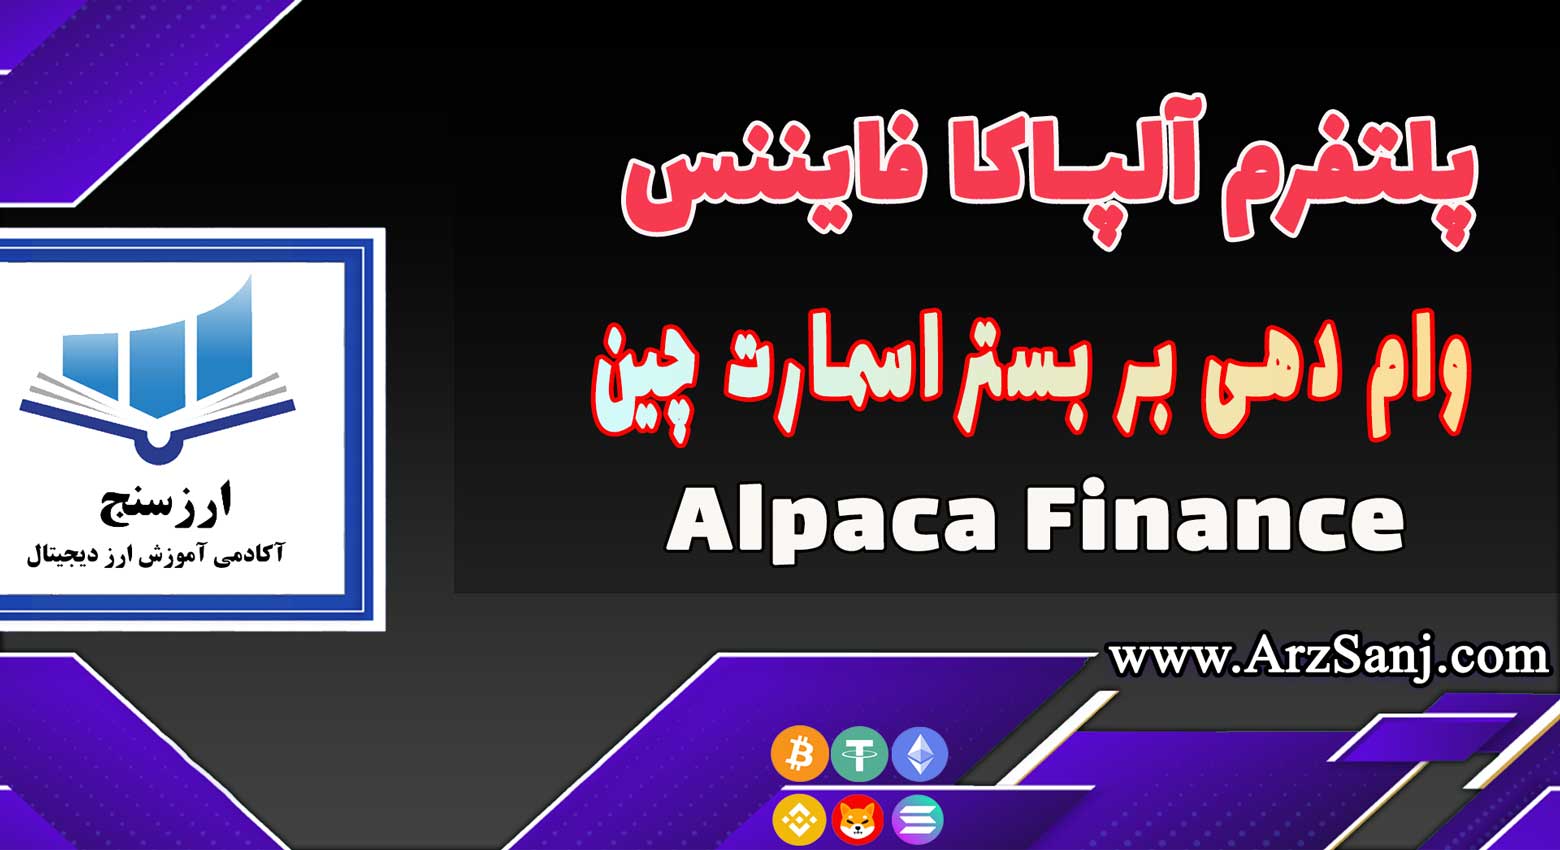 آموزش پلتفرم آلپاکا فایننس (نحوه کار با سایت Alpaca Finance)